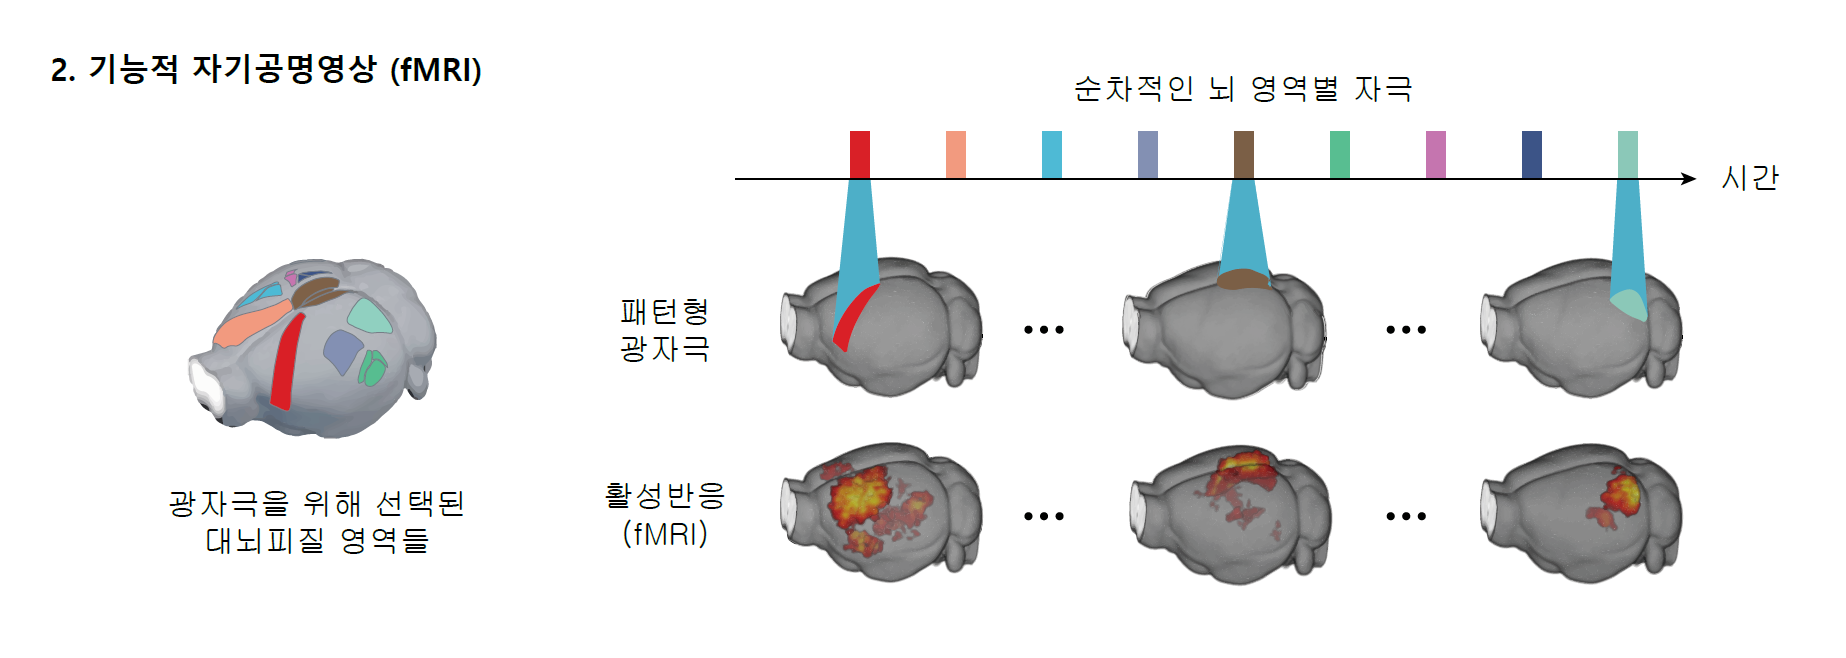 [그림3] 기능적 자기공명영상(fMRI)
            이번 연구에서는 총 9개의 영역이 목표로 설정되었다, 이 9개의 영역이 순차적으로 자극되고, 이에 대한 반응은 fMRI로 측정된다.